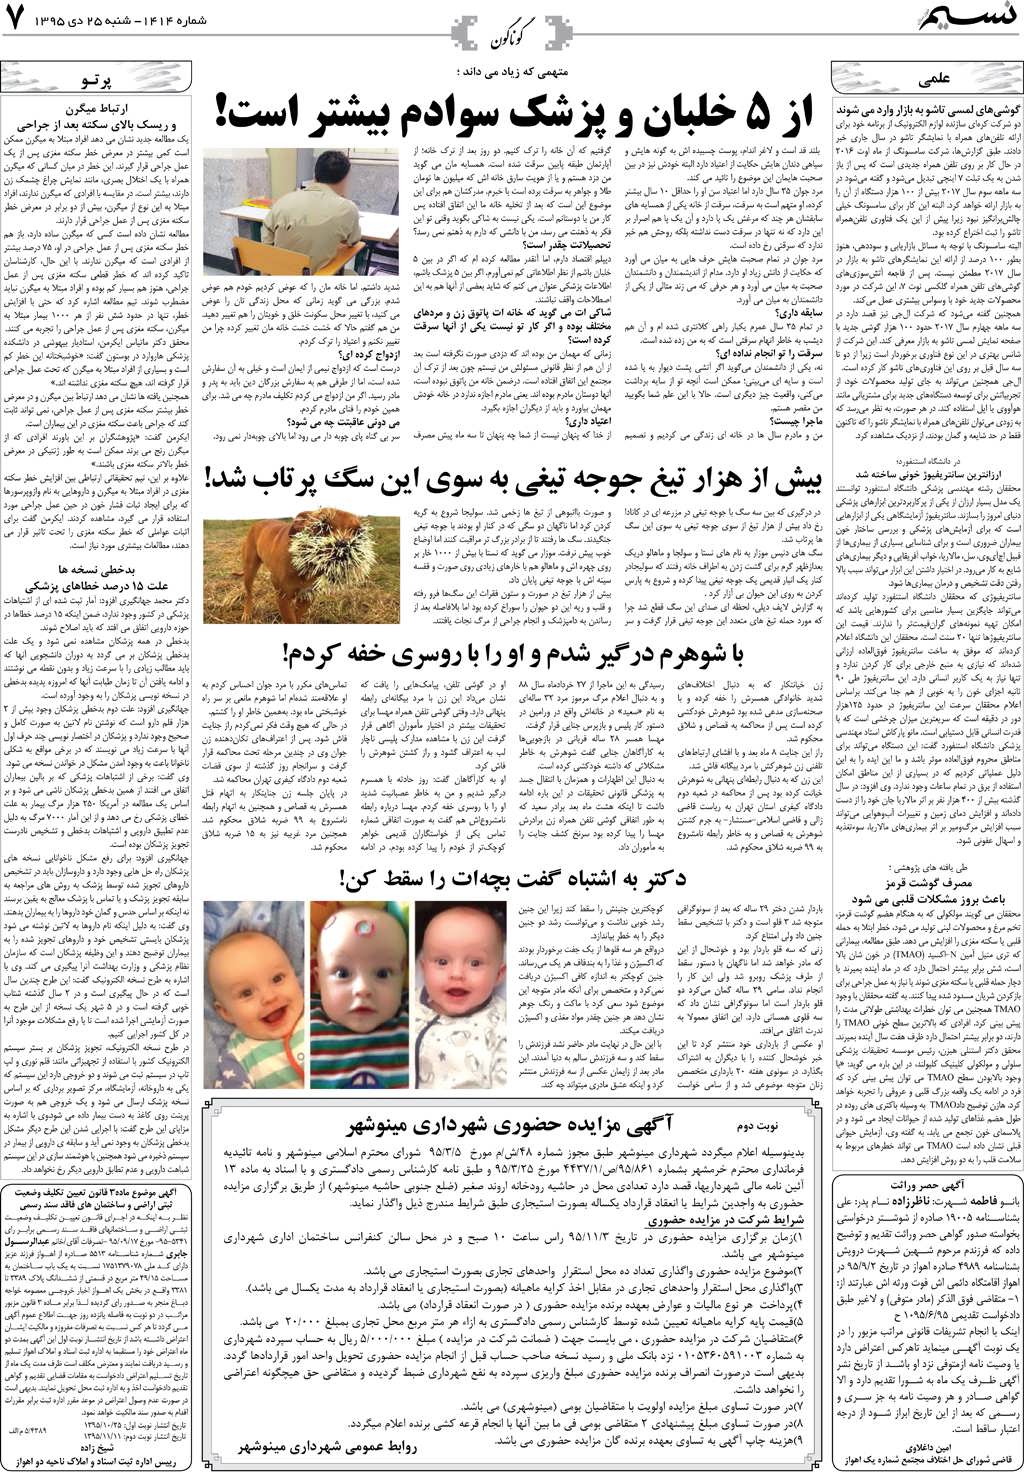 صفحه گوناگون روزنامه نسیم شماره 1414